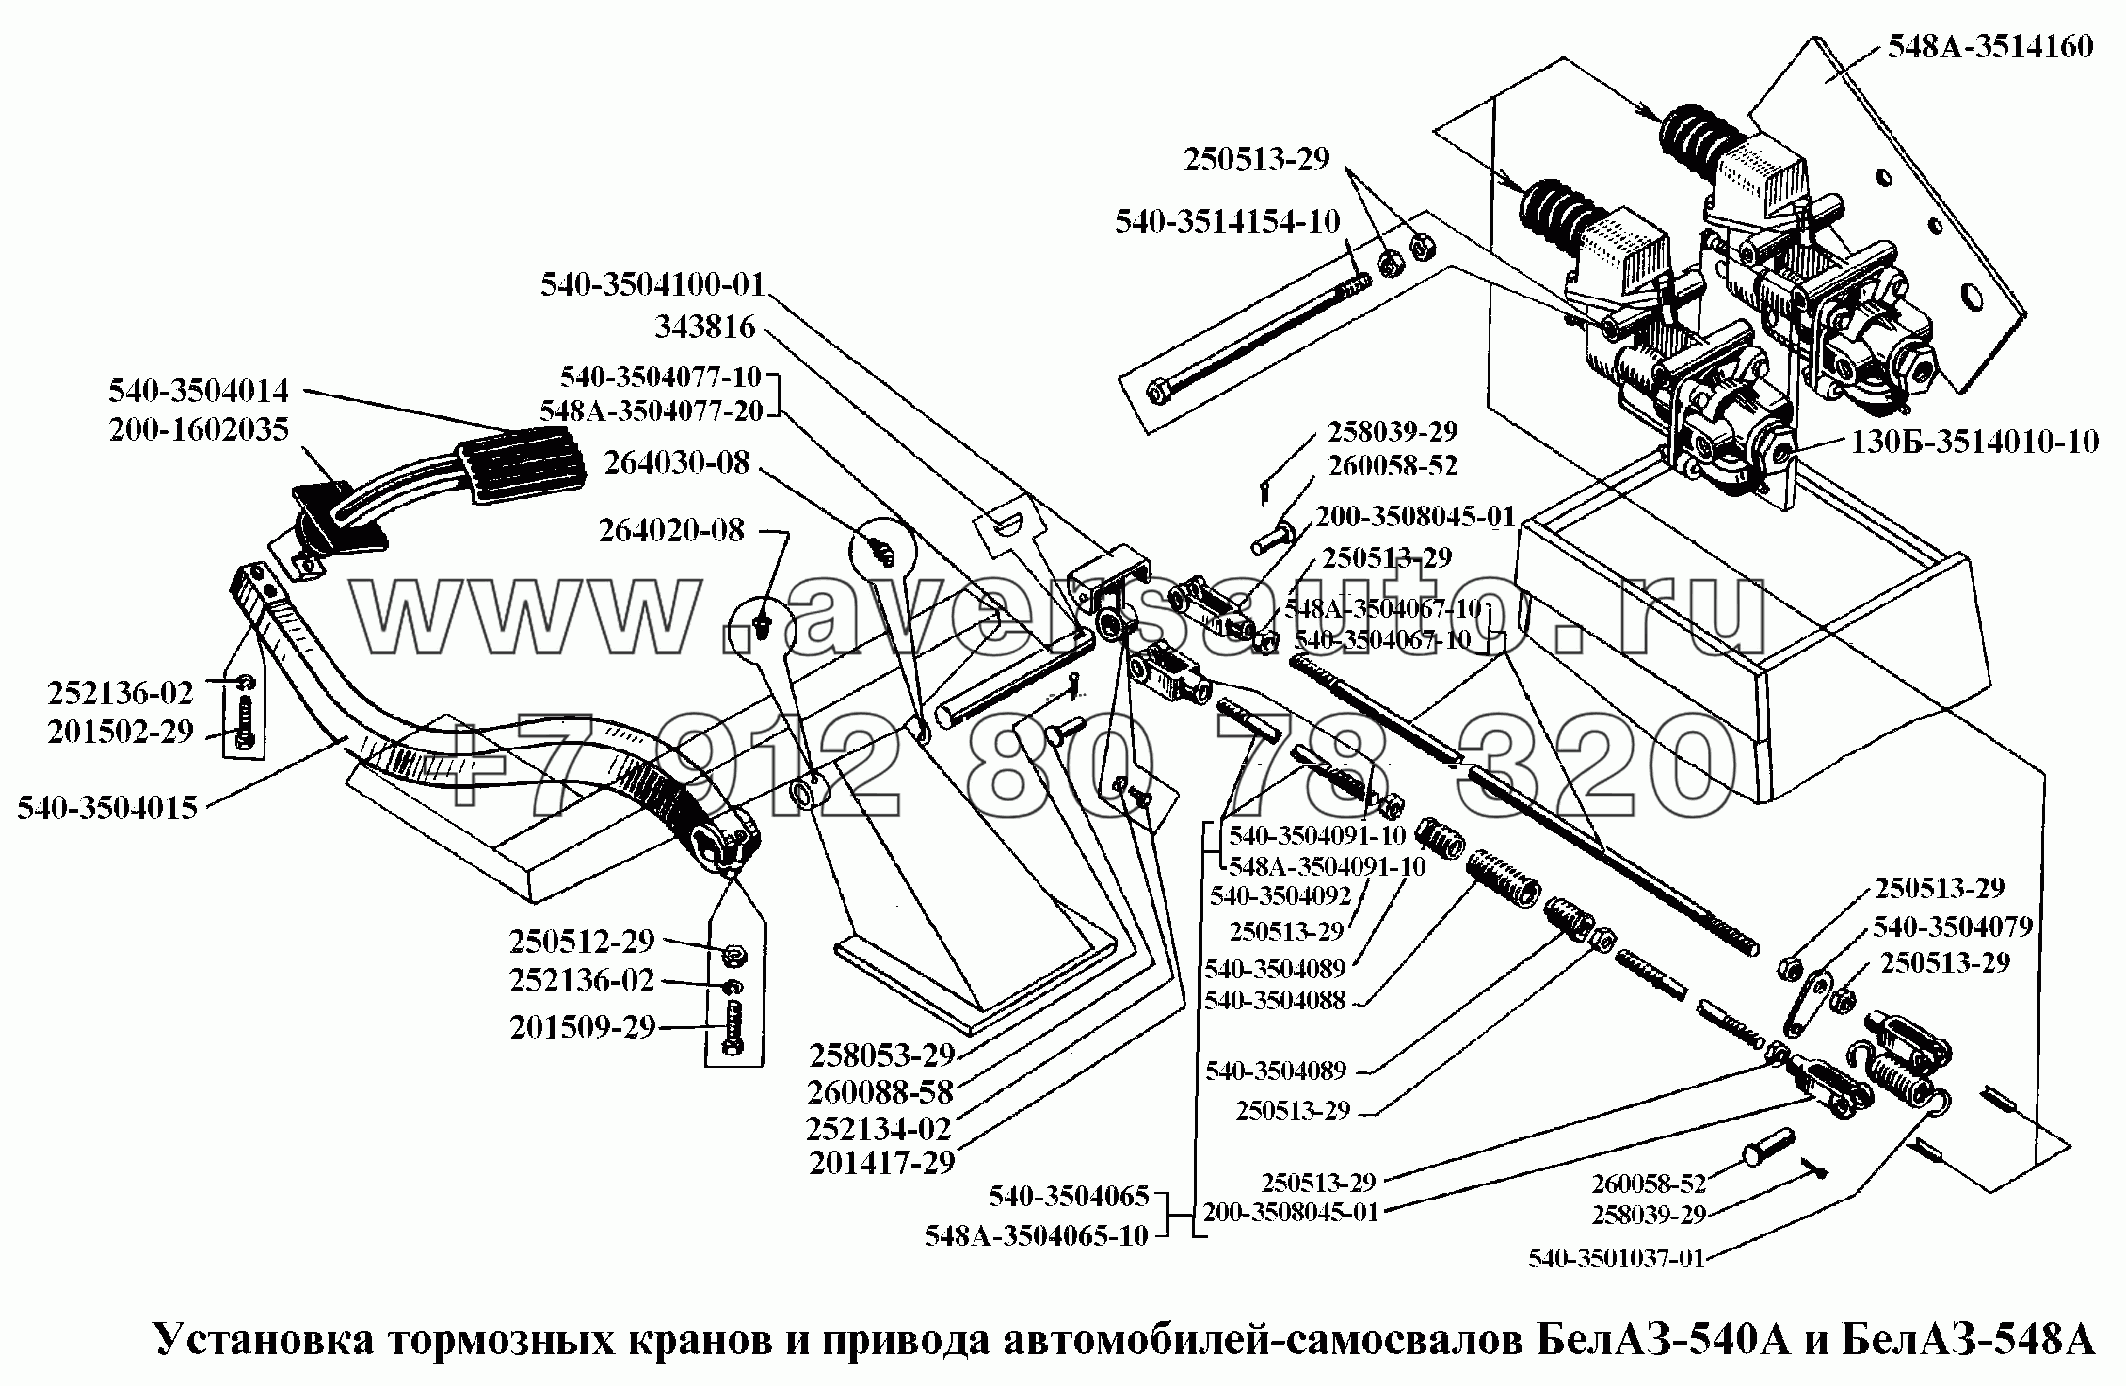 Установка тормозных кранов и привода автомобилей-самосвалов БелАЗ-540А и БелАЗ-548А